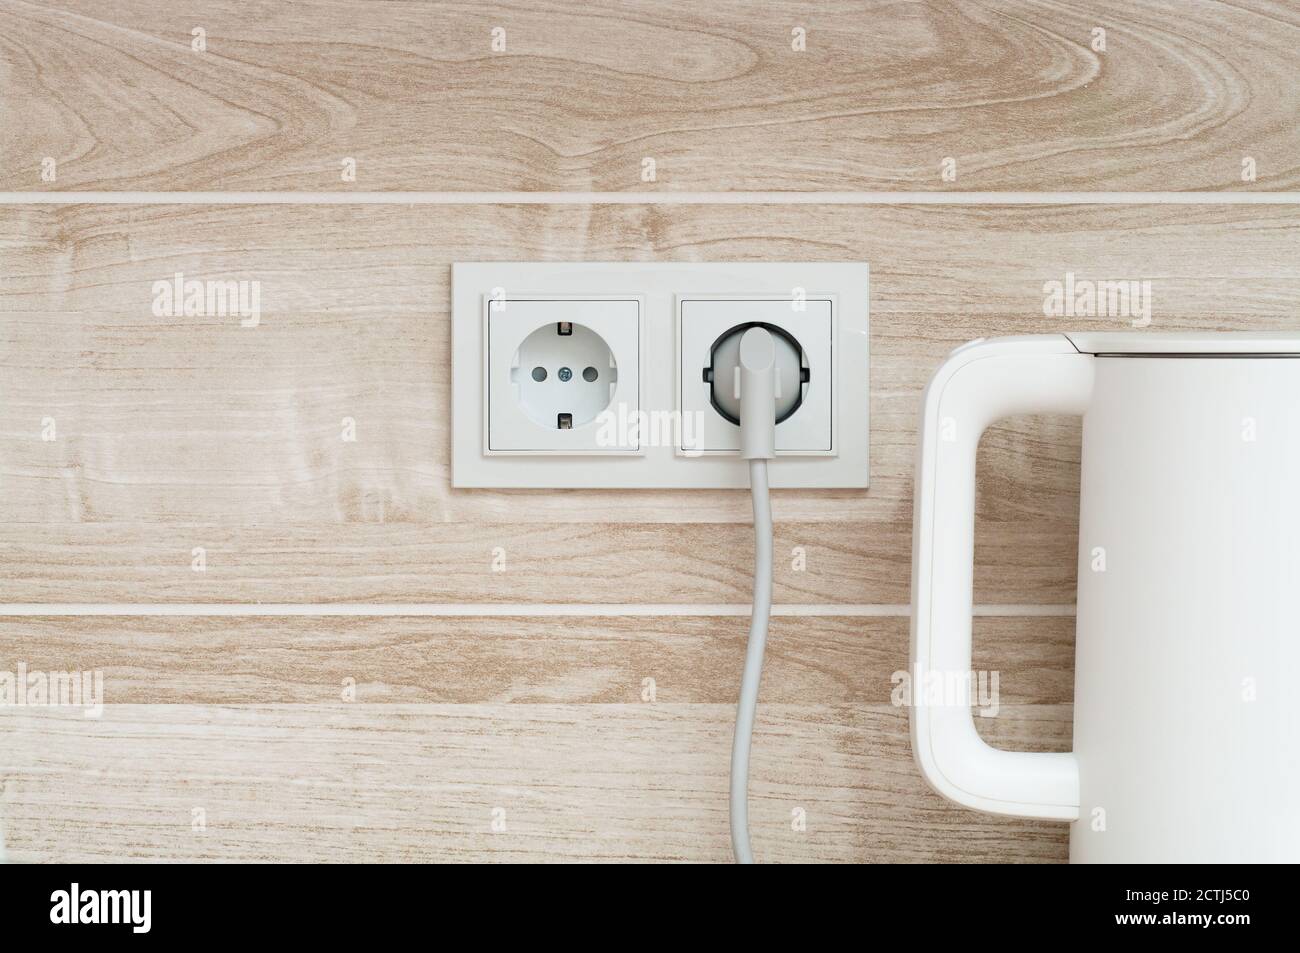 bollitore elettrico bianco collegato a una presa di corrente su muro in una cucina Foto Stock